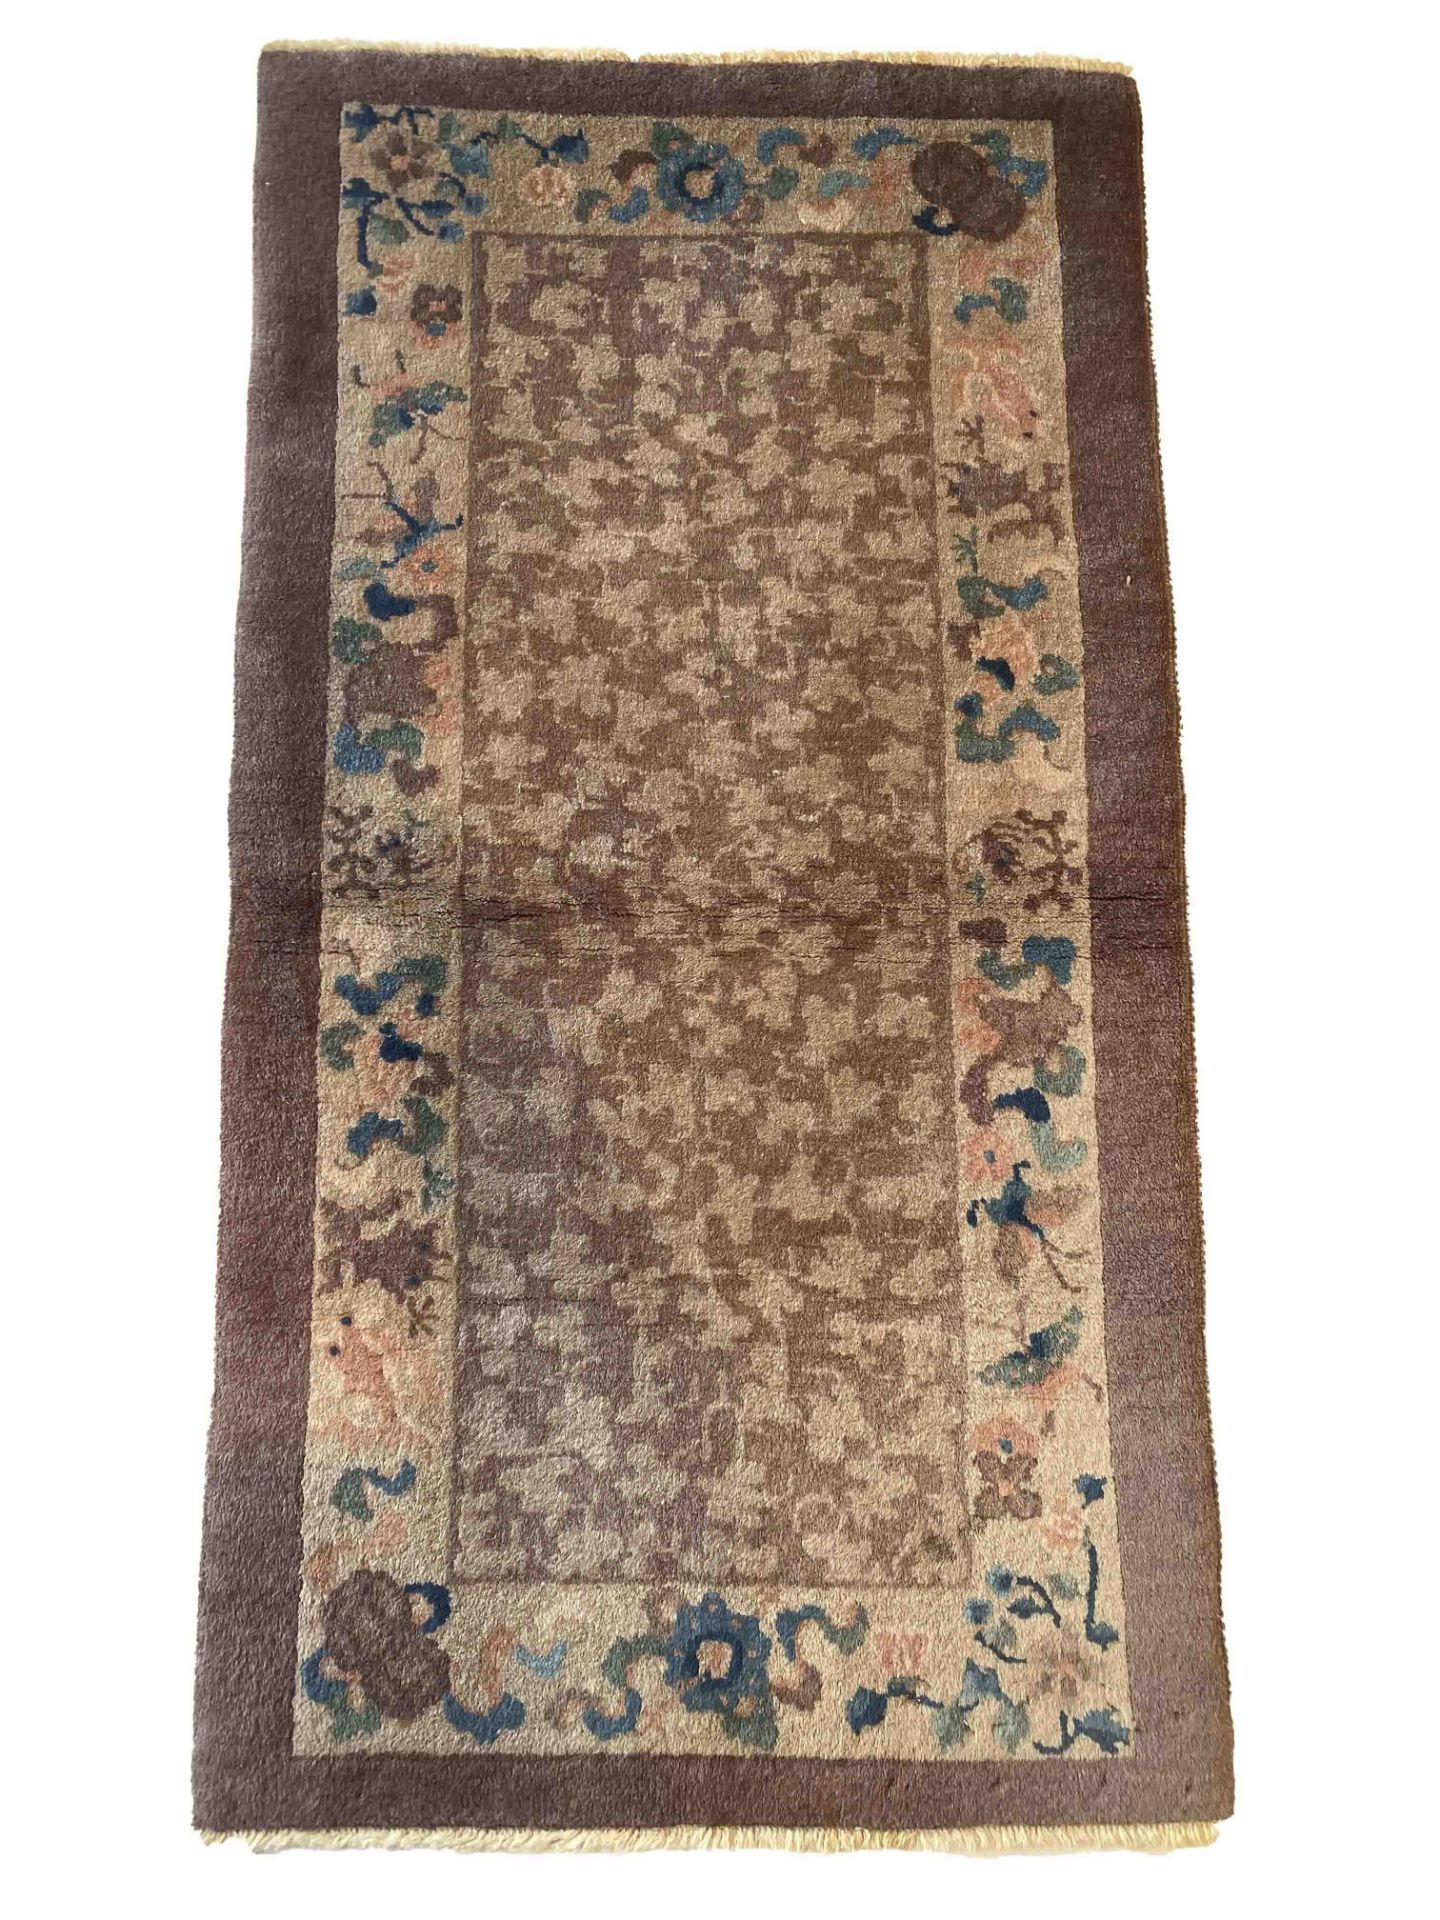 Teppich, China, minor wear, 120